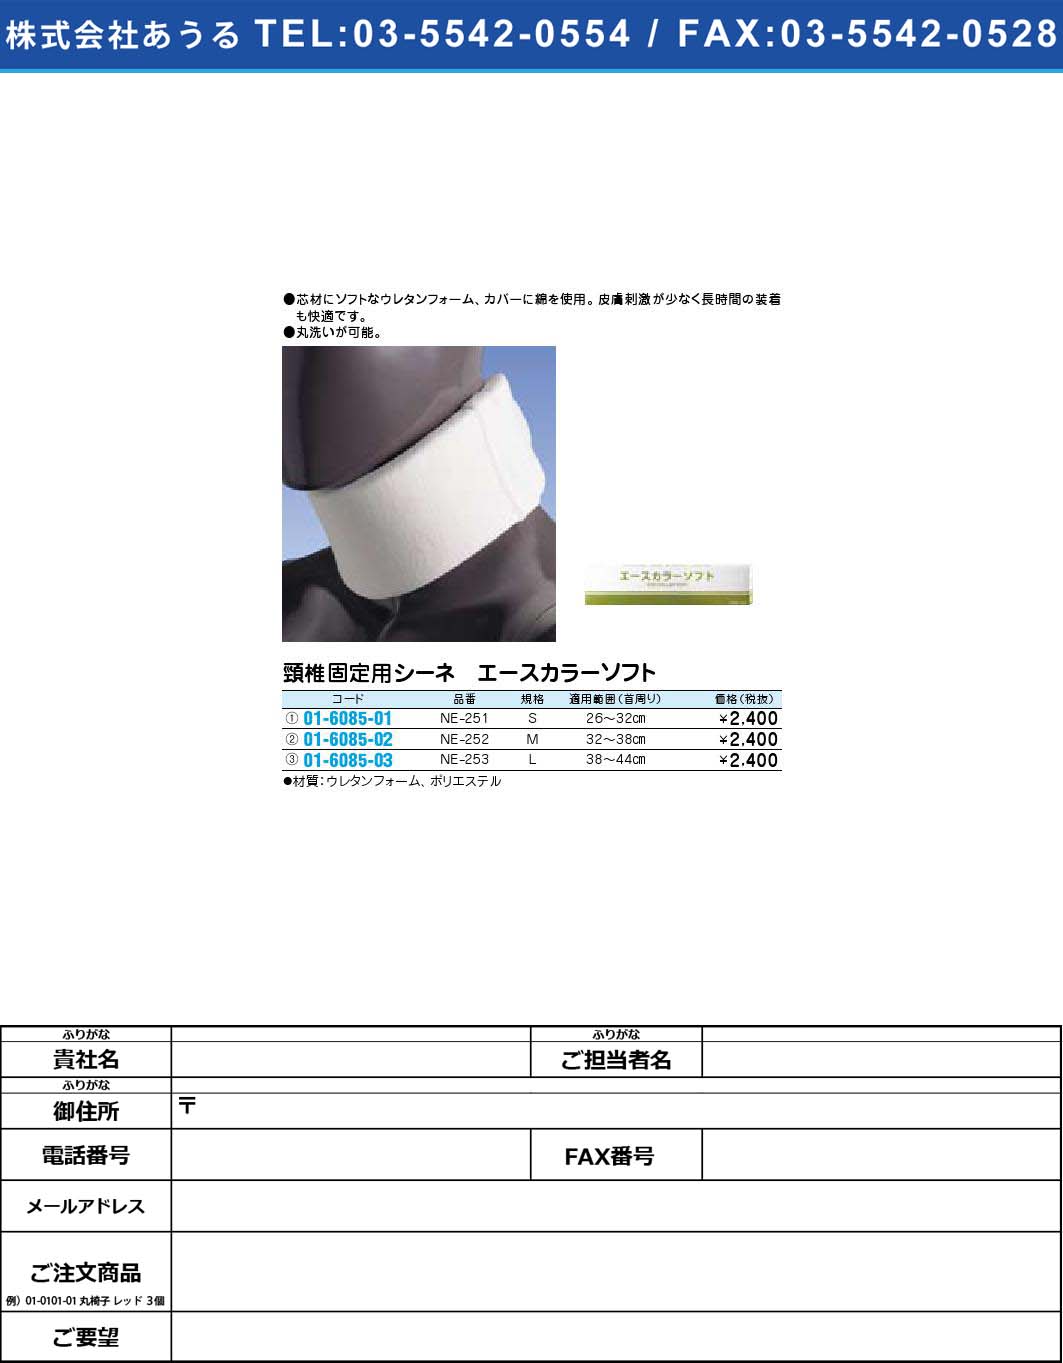 頸椎固定用シーネ エースカラーソフト NE-251【1単位】(01-6085-01)